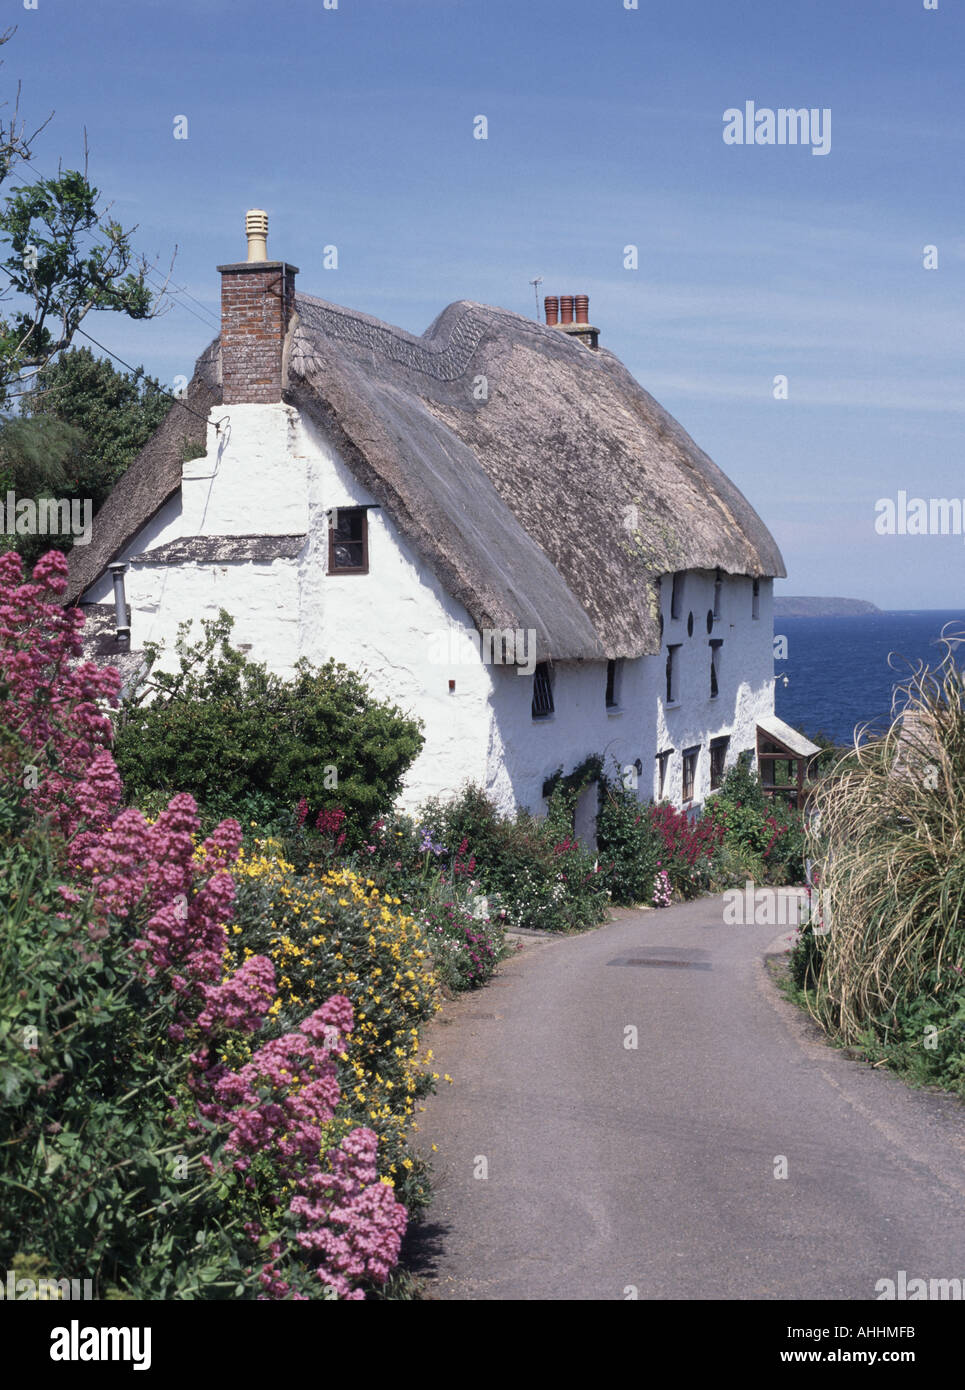 Toit de chaume sur les maisons de campagne anglaise dans la ruelle étroite de Cornish et fleurs à Church Cove petit hameau côtier de la paroisse de Landewednack Cornwall Royaume-Uni Banque D'Images